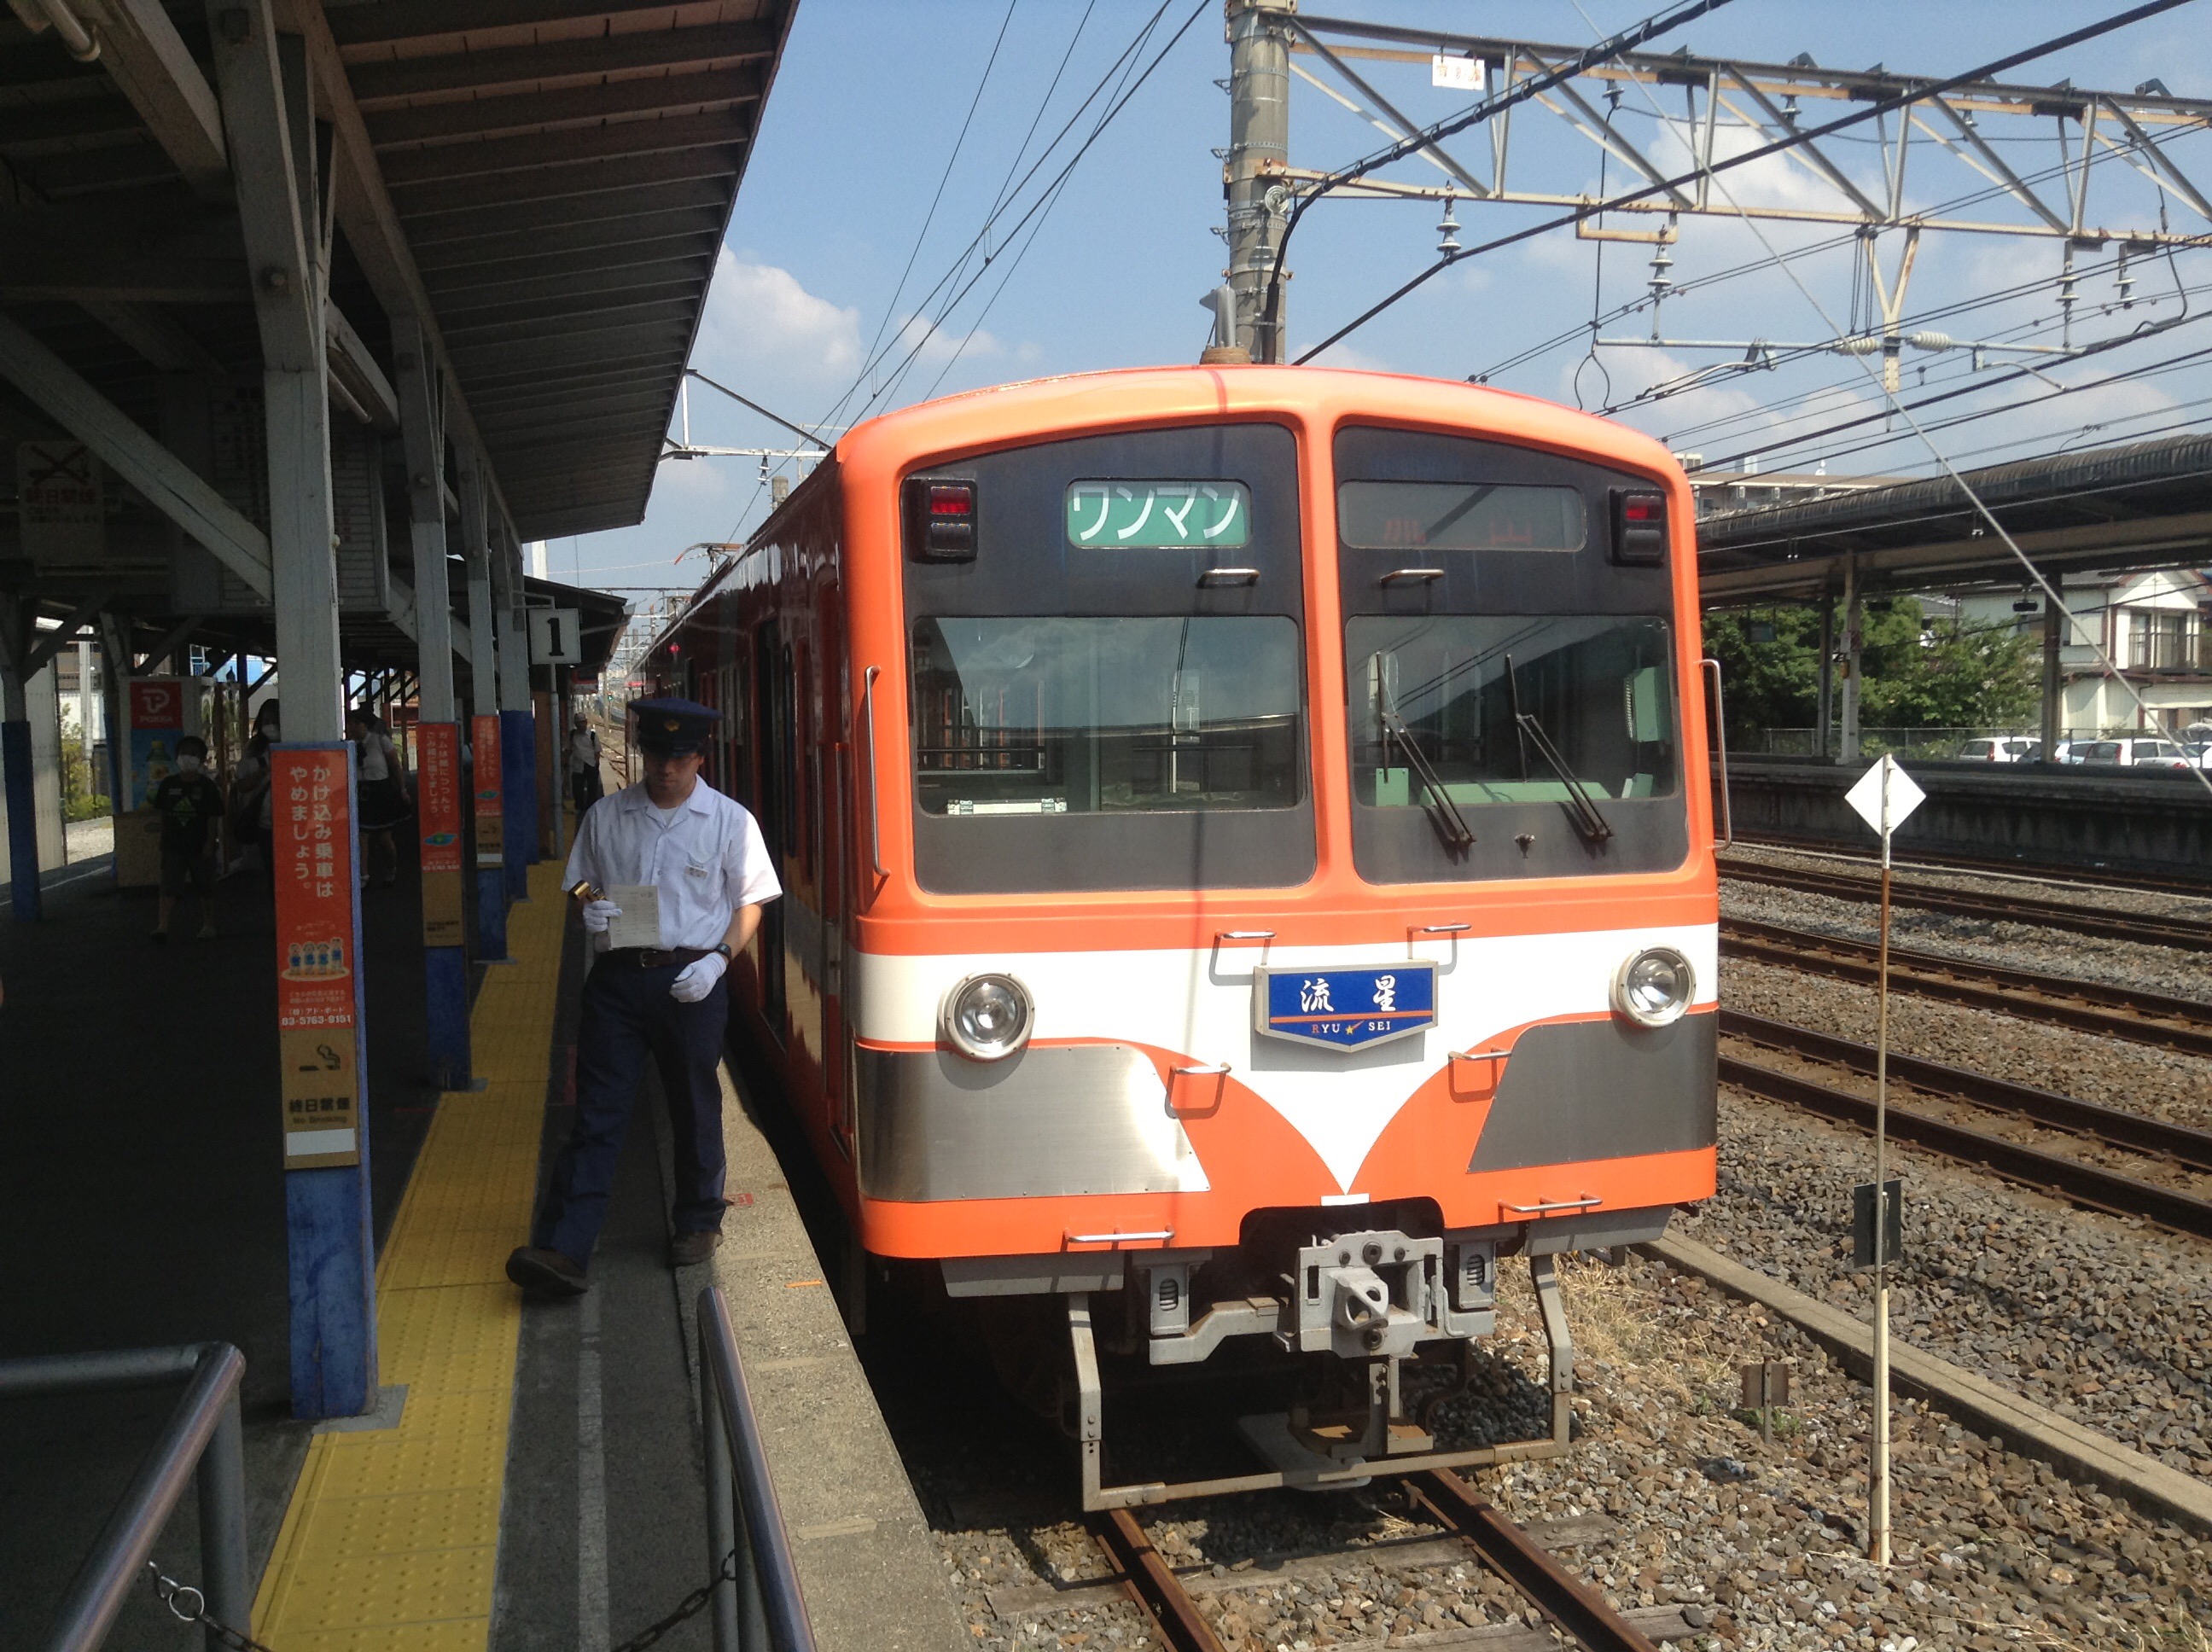 【過去の放浪記】旧友と気まぐれな関東近郊乗り鉄 2013年9月